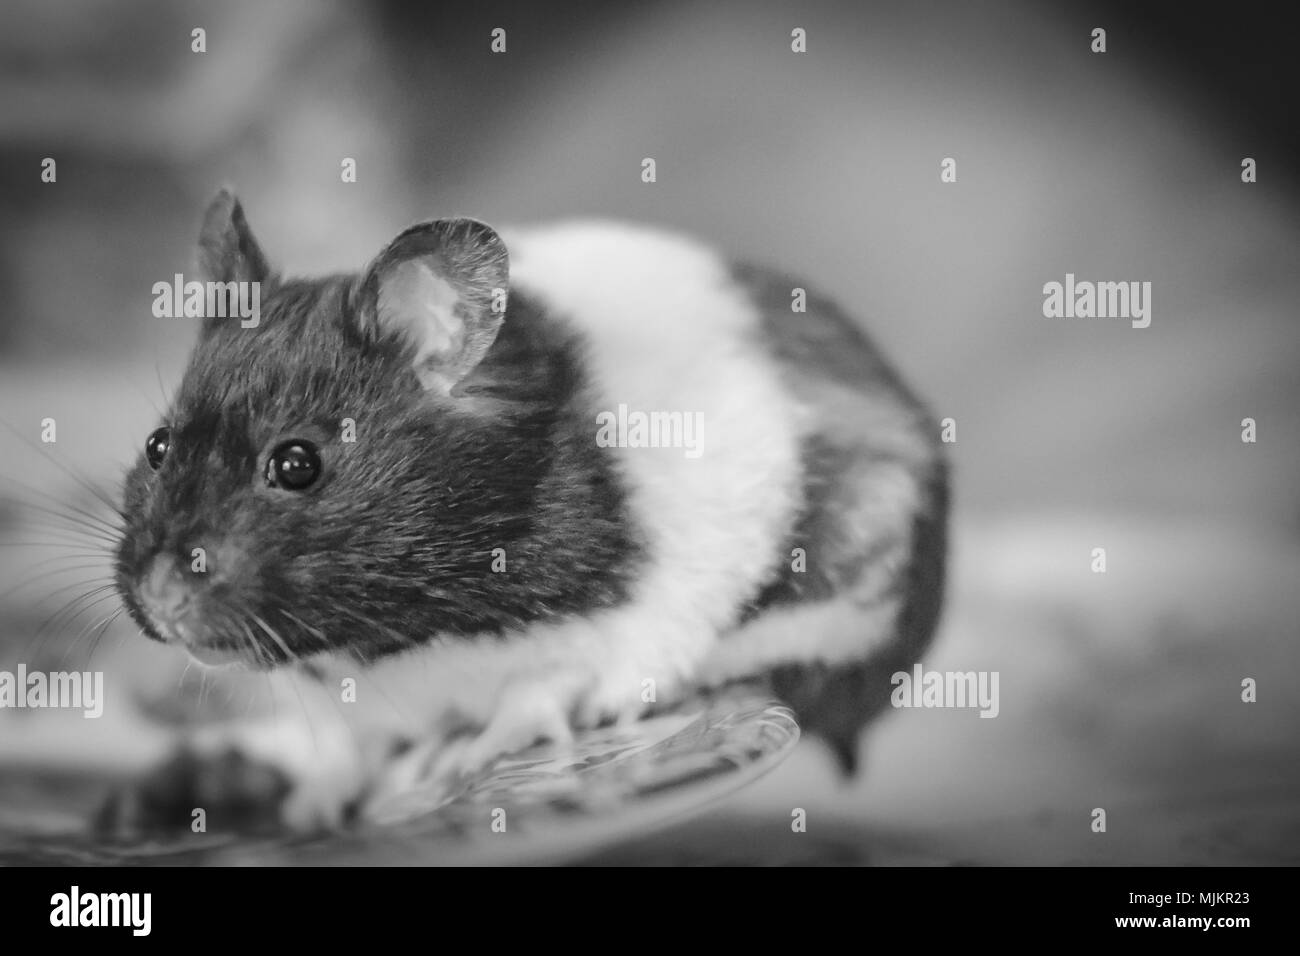 Hamster adultes vu posant pour l'appareil photo alors qu'elle est assise sur une assiette à dîner, juste après avoir mangé des petits pois. Banque D'Images